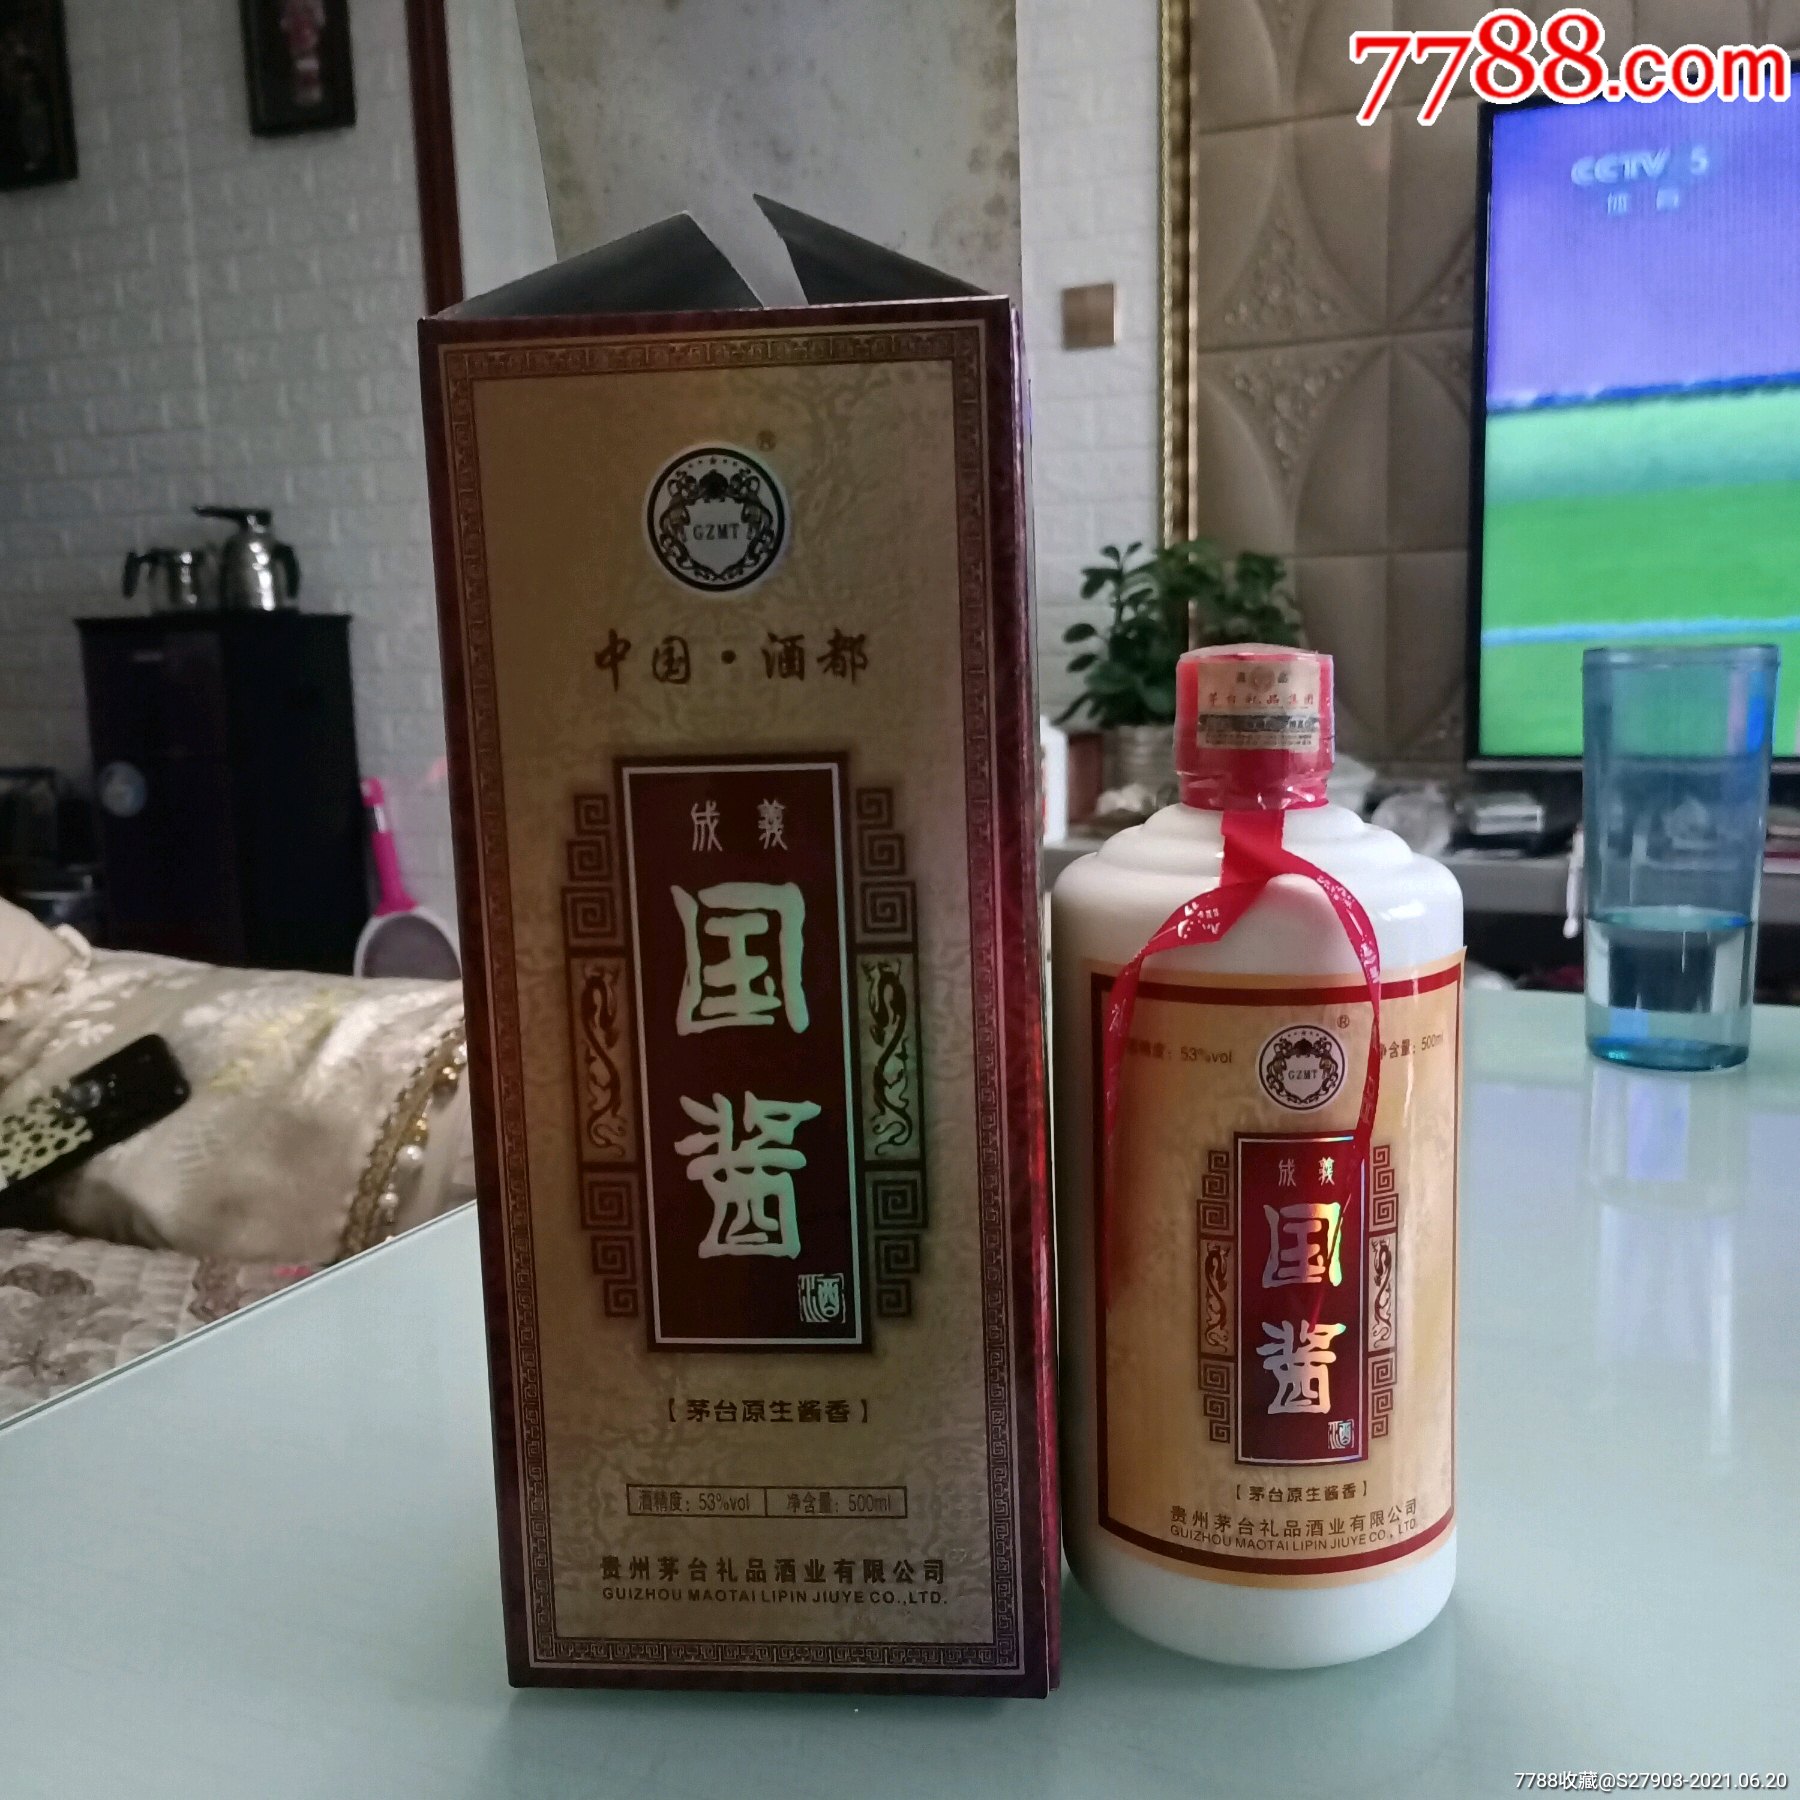 2011年国酱酒(53度酱香型)贵州茅台礼品酒业公司_价格499元【远源流连